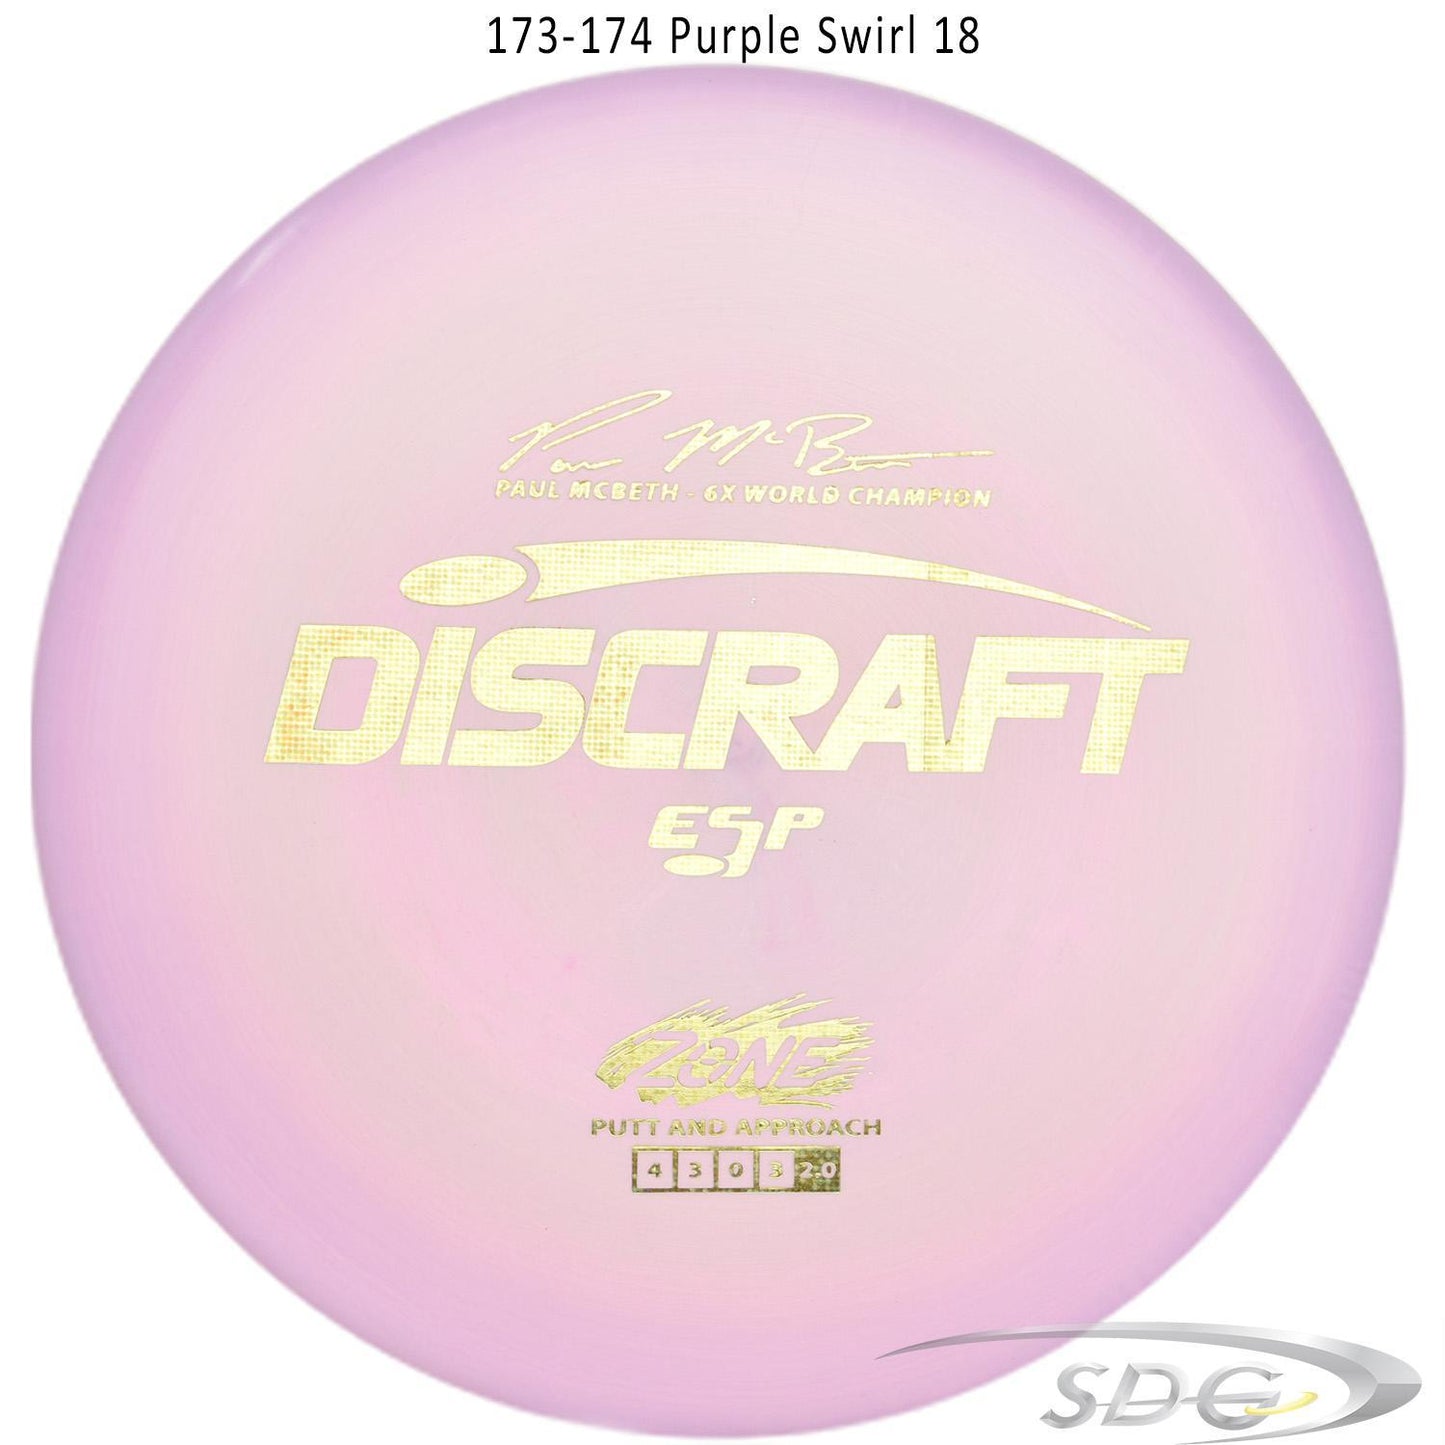 discraft-esp-zone-6x-paul-mcbeth-signature-series-disc-golf-putter 173-174 Purple Swirl 18